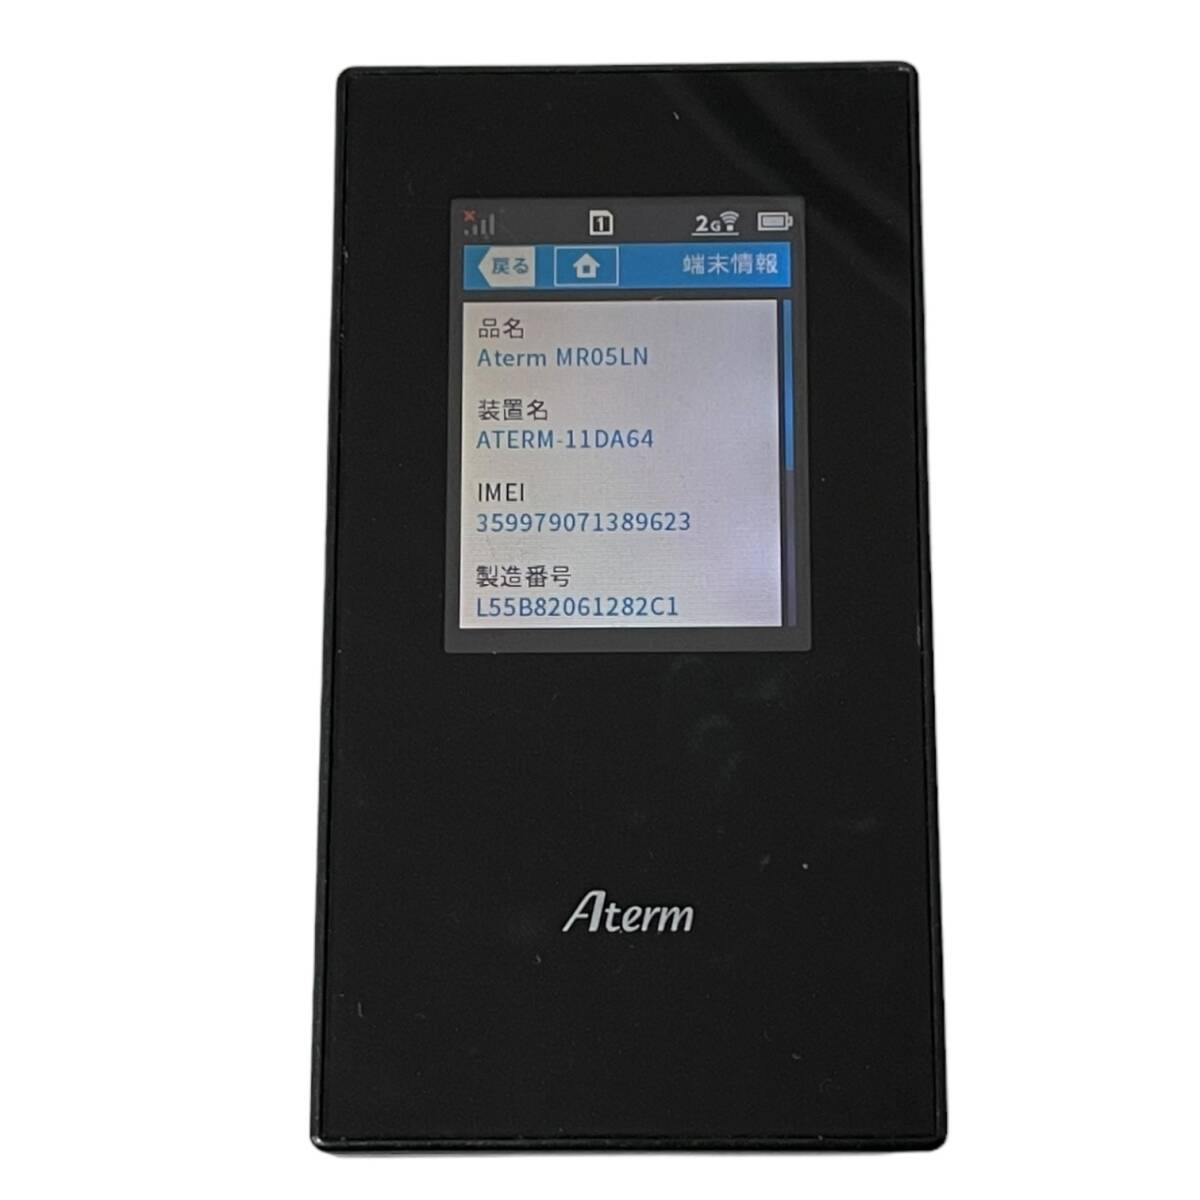 【中古品】 Aterm MR04LN SIMフリー LTEモバイルルータ ブラック NEC モバイルWi-Fiルーター ポケットWi-Fi 本体のみ N59078RL_画像4